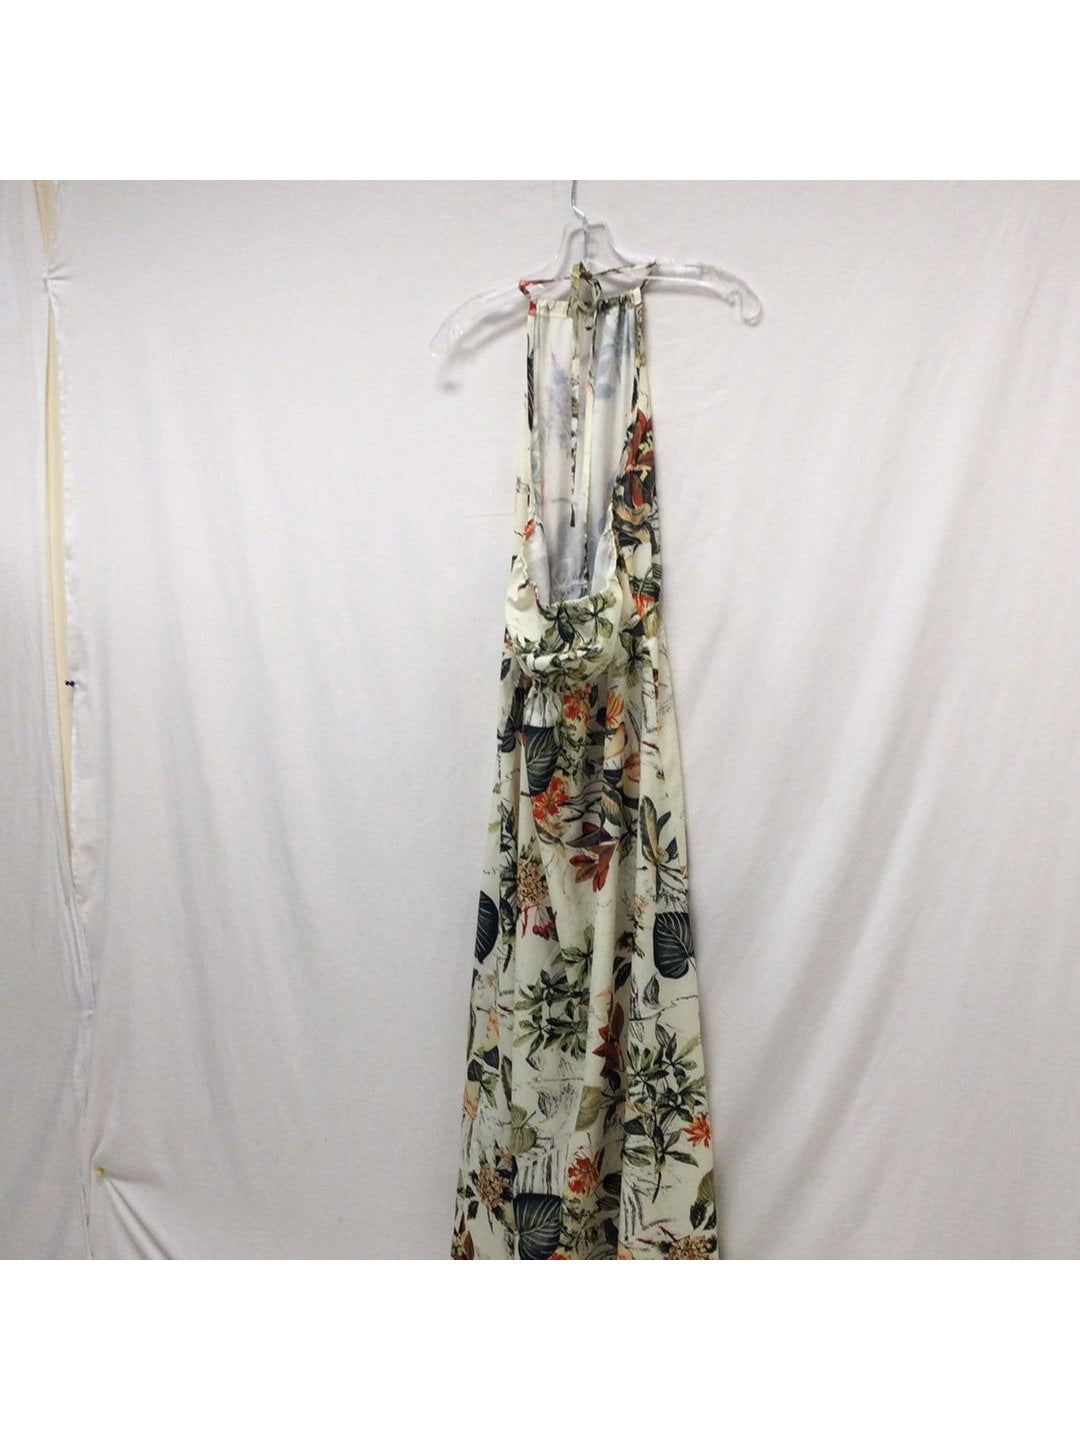 Shein Ladies White Medium Flower No Sleeve Dress - The Kennedy Collective Thrift - 